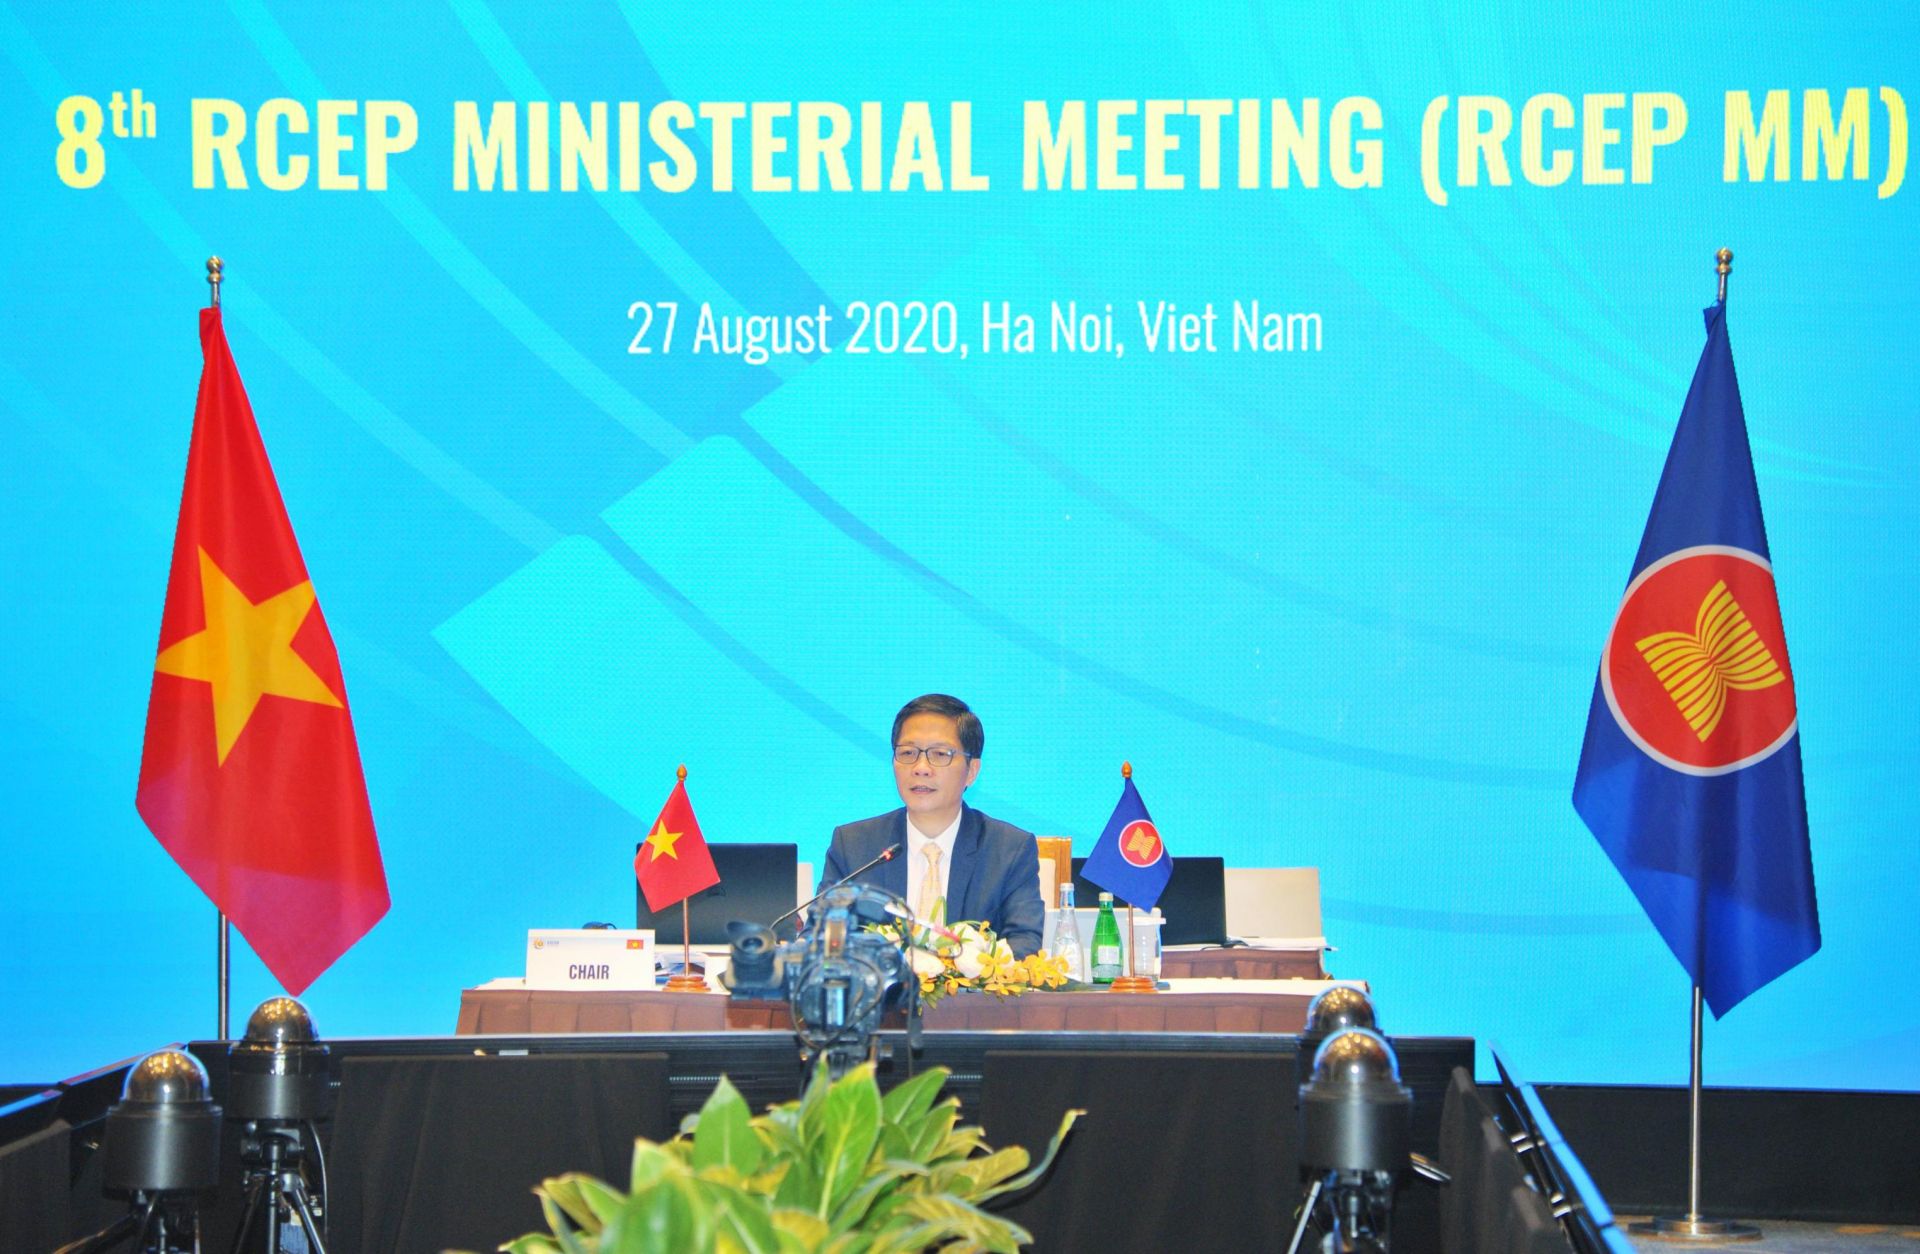 Bộ trưởng Trần Tuấn Anh chủ trì Hội nghị Bộ trưởng Kinh tế RCEP lần thứ 8